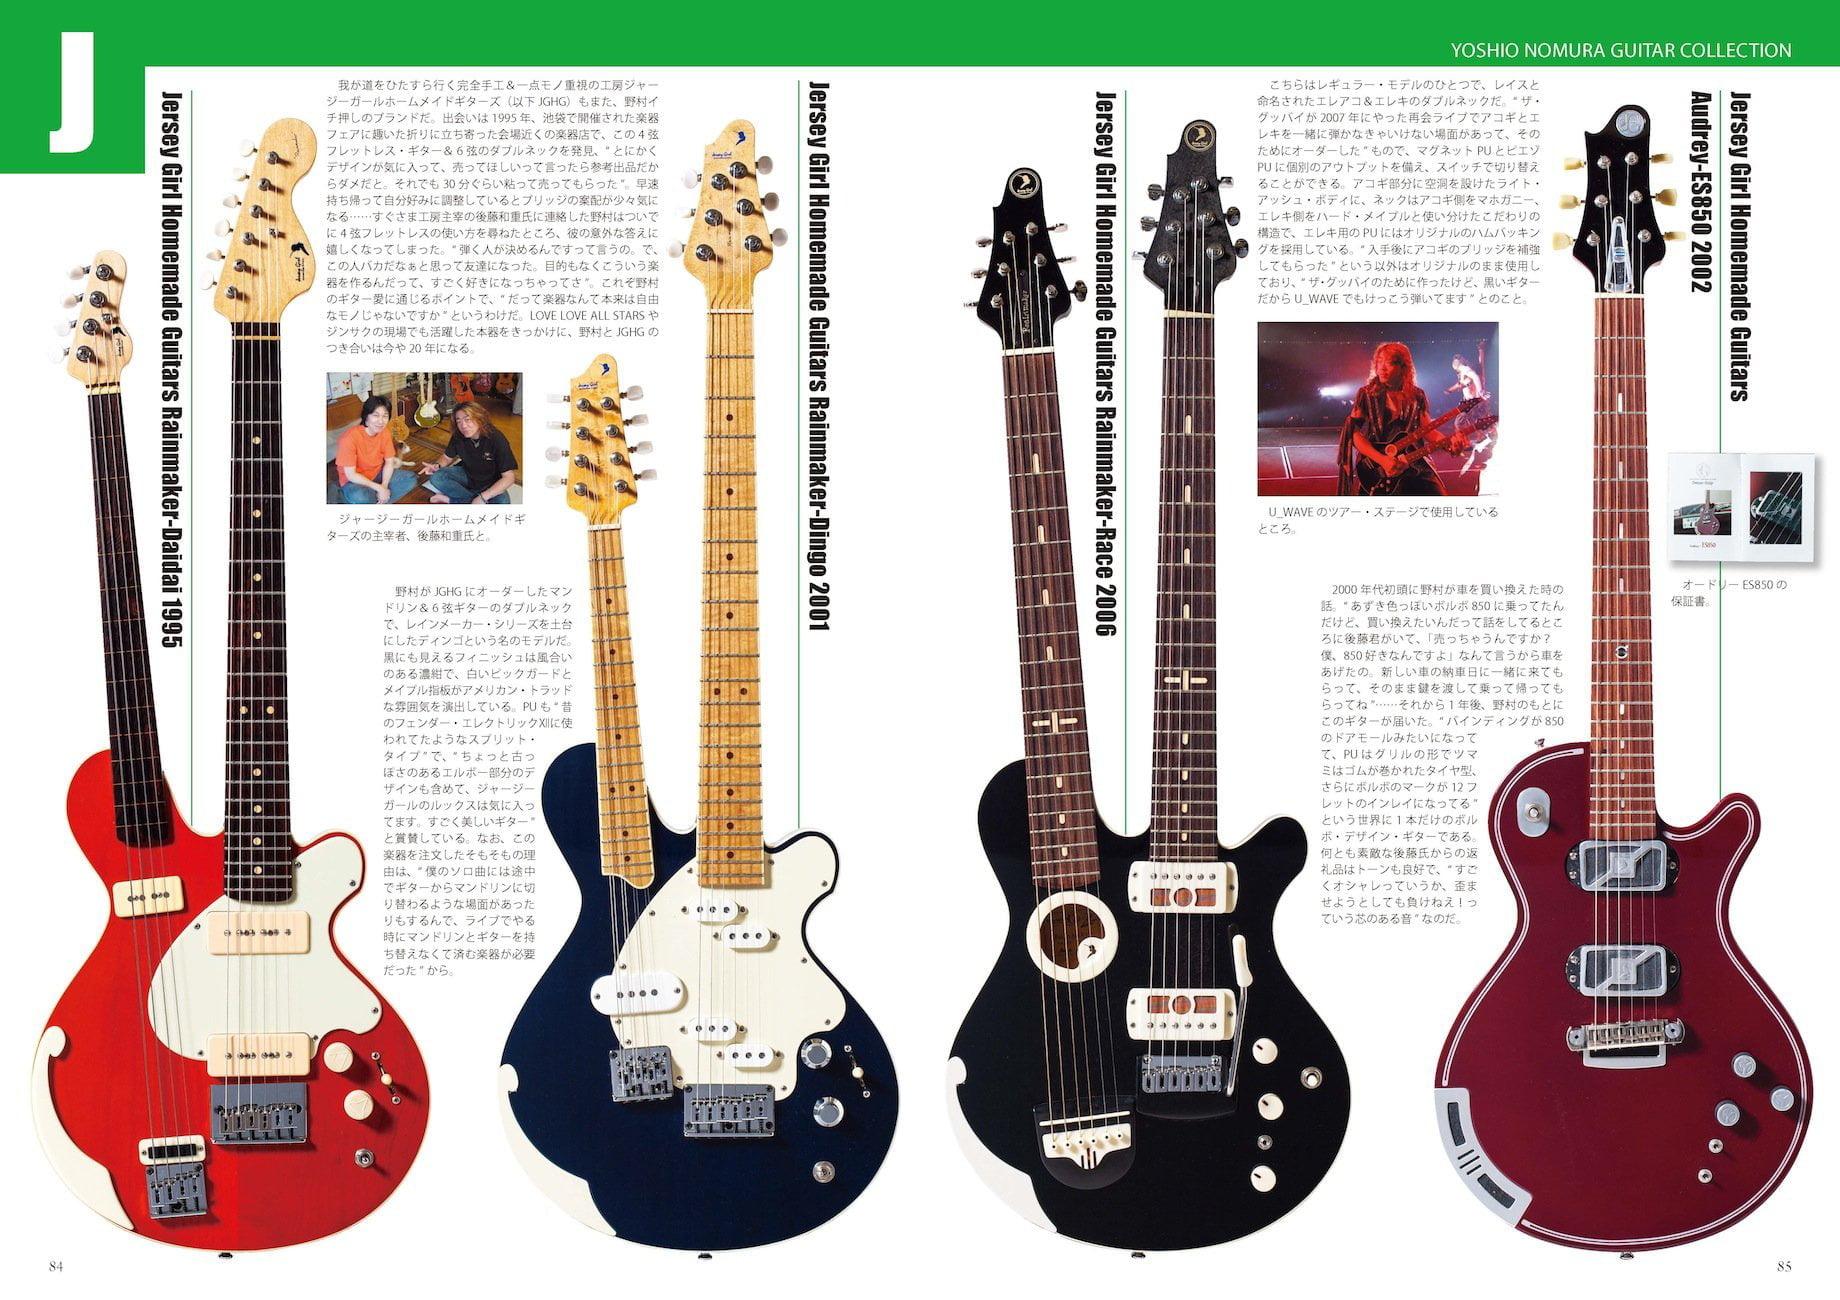 野村義男の“思わず検索したくなる"ギター・コレクションJersey Girl Homemade guitars